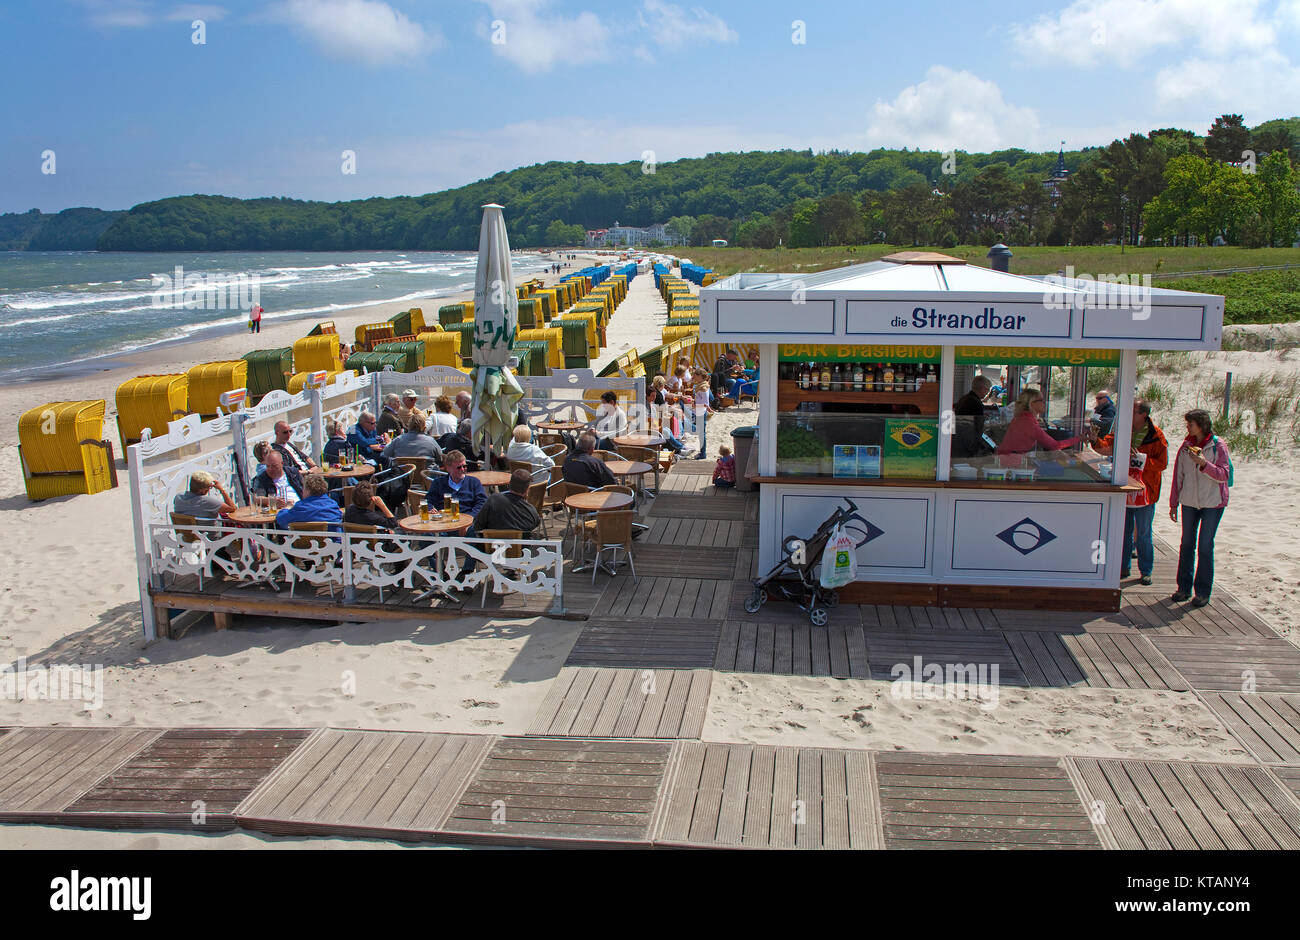 Strandbar an der Seebrücke von Binz, Insel Rügen, Mecklenburg-Vorpommern, Ostsee, Deutschland, Europa Stockfoto